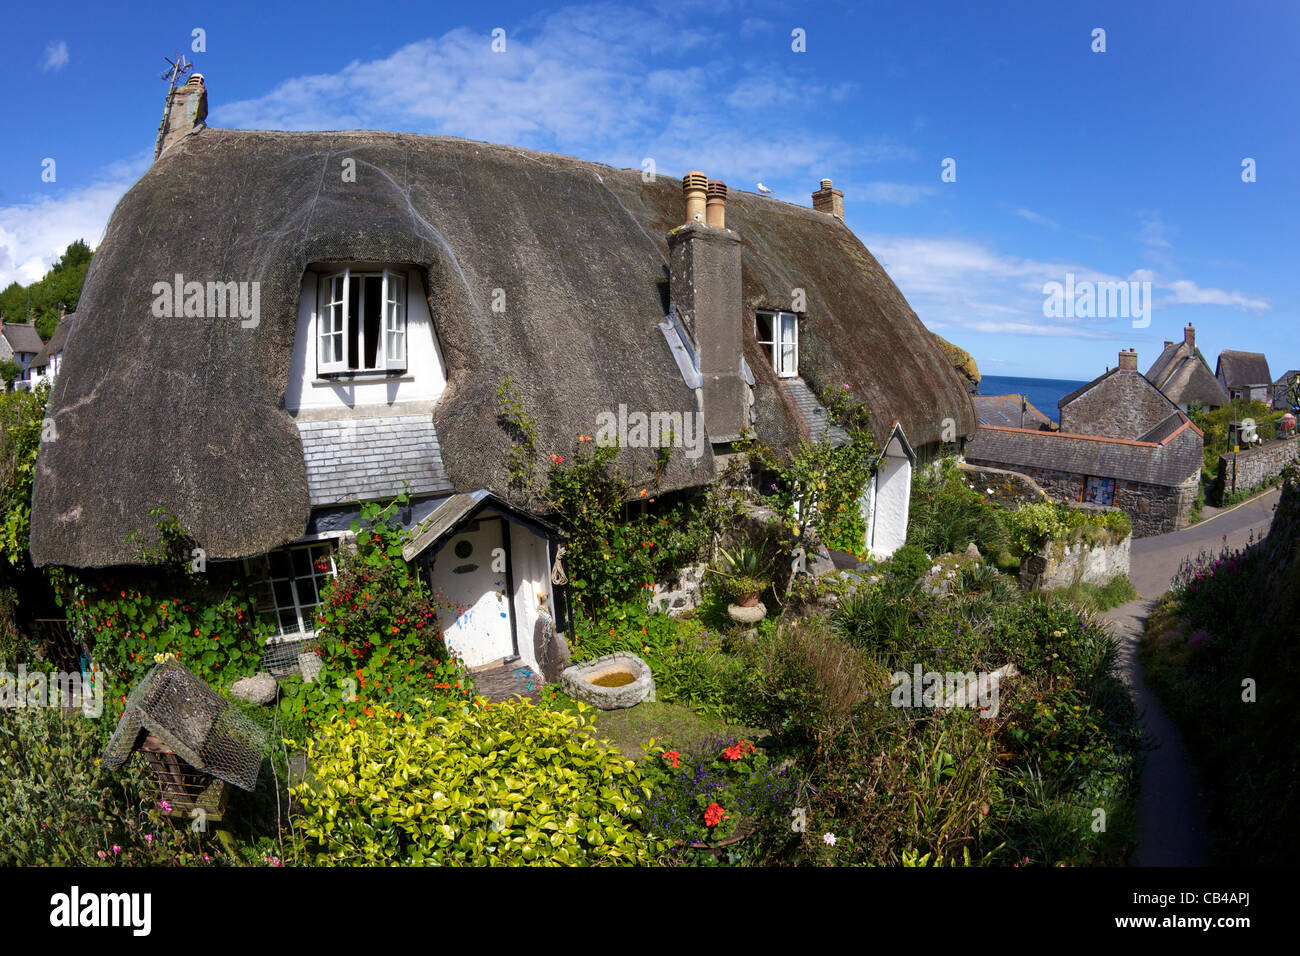 Strohgedeckten Hütten am Cadgwith, Halbinsel Lizard, Cornwall, Südwestengland, UK, Vereinigtes Königreich, GB, Großbritannien, Stockfoto